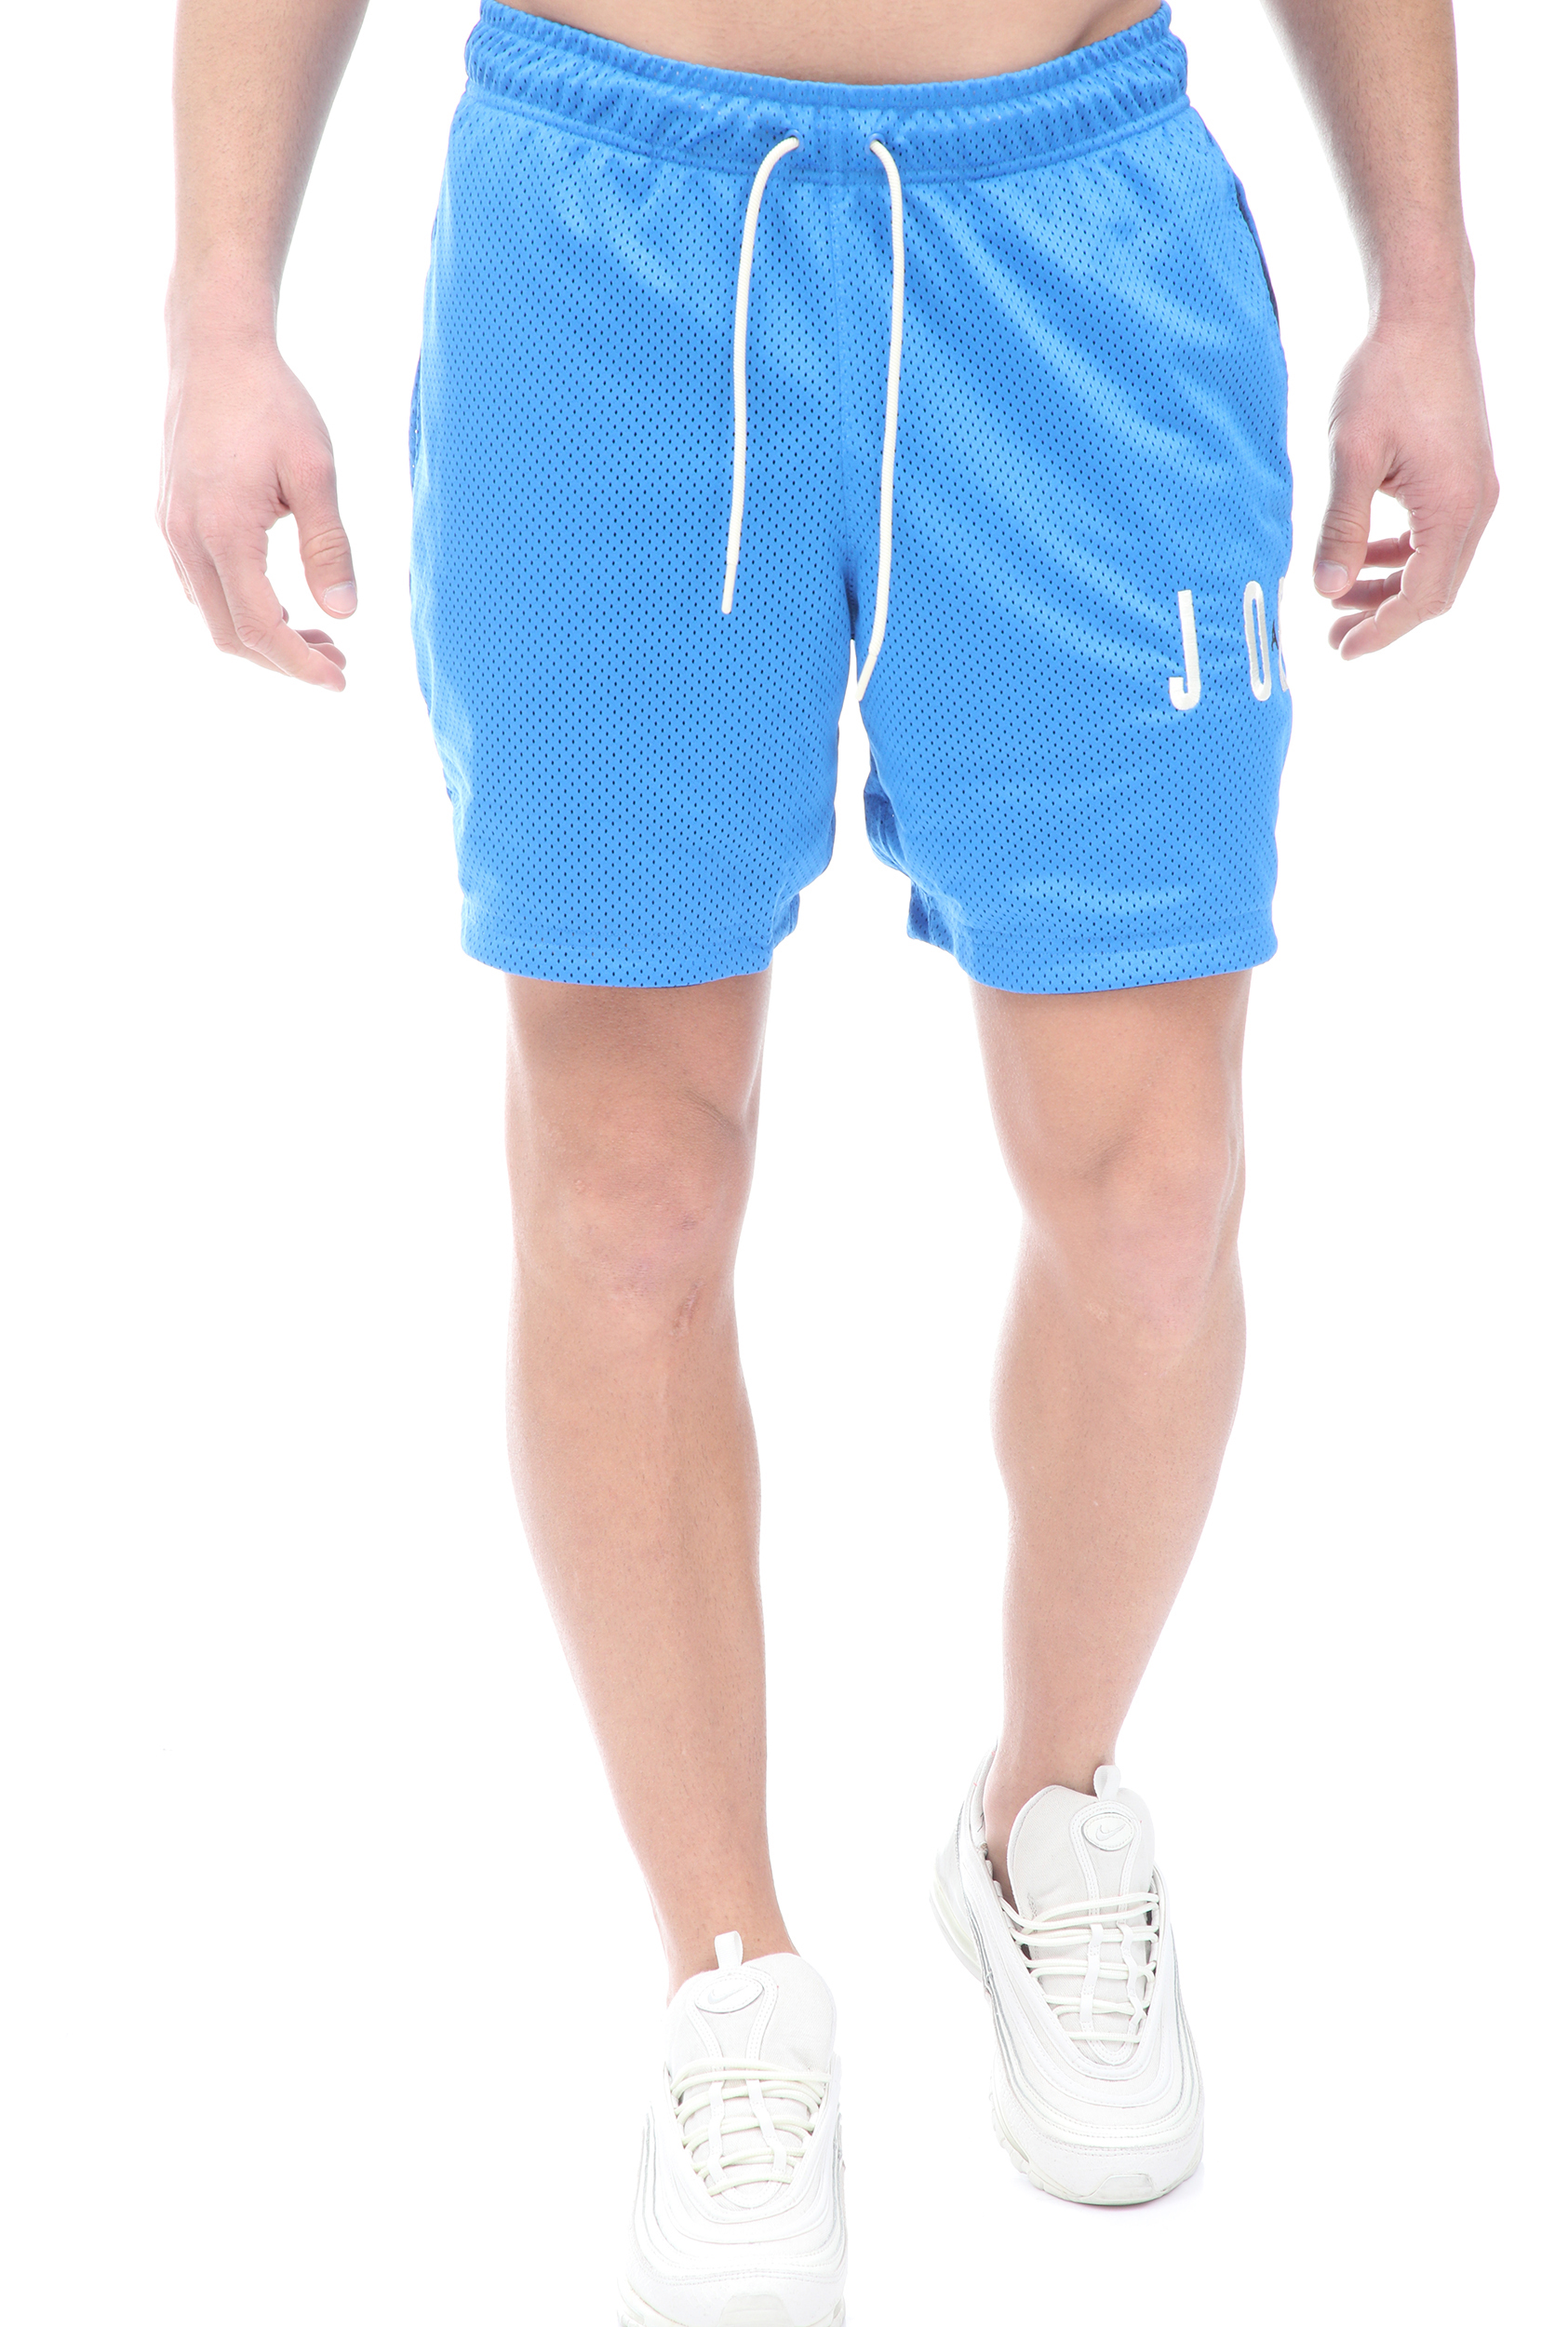 Ανδρικά/Ρούχα/Σορτς-Βερμούδες/Αθλητικά NIKE - Ανδρική βερμούδα NIKE J JUMPMAN AIR μπλε